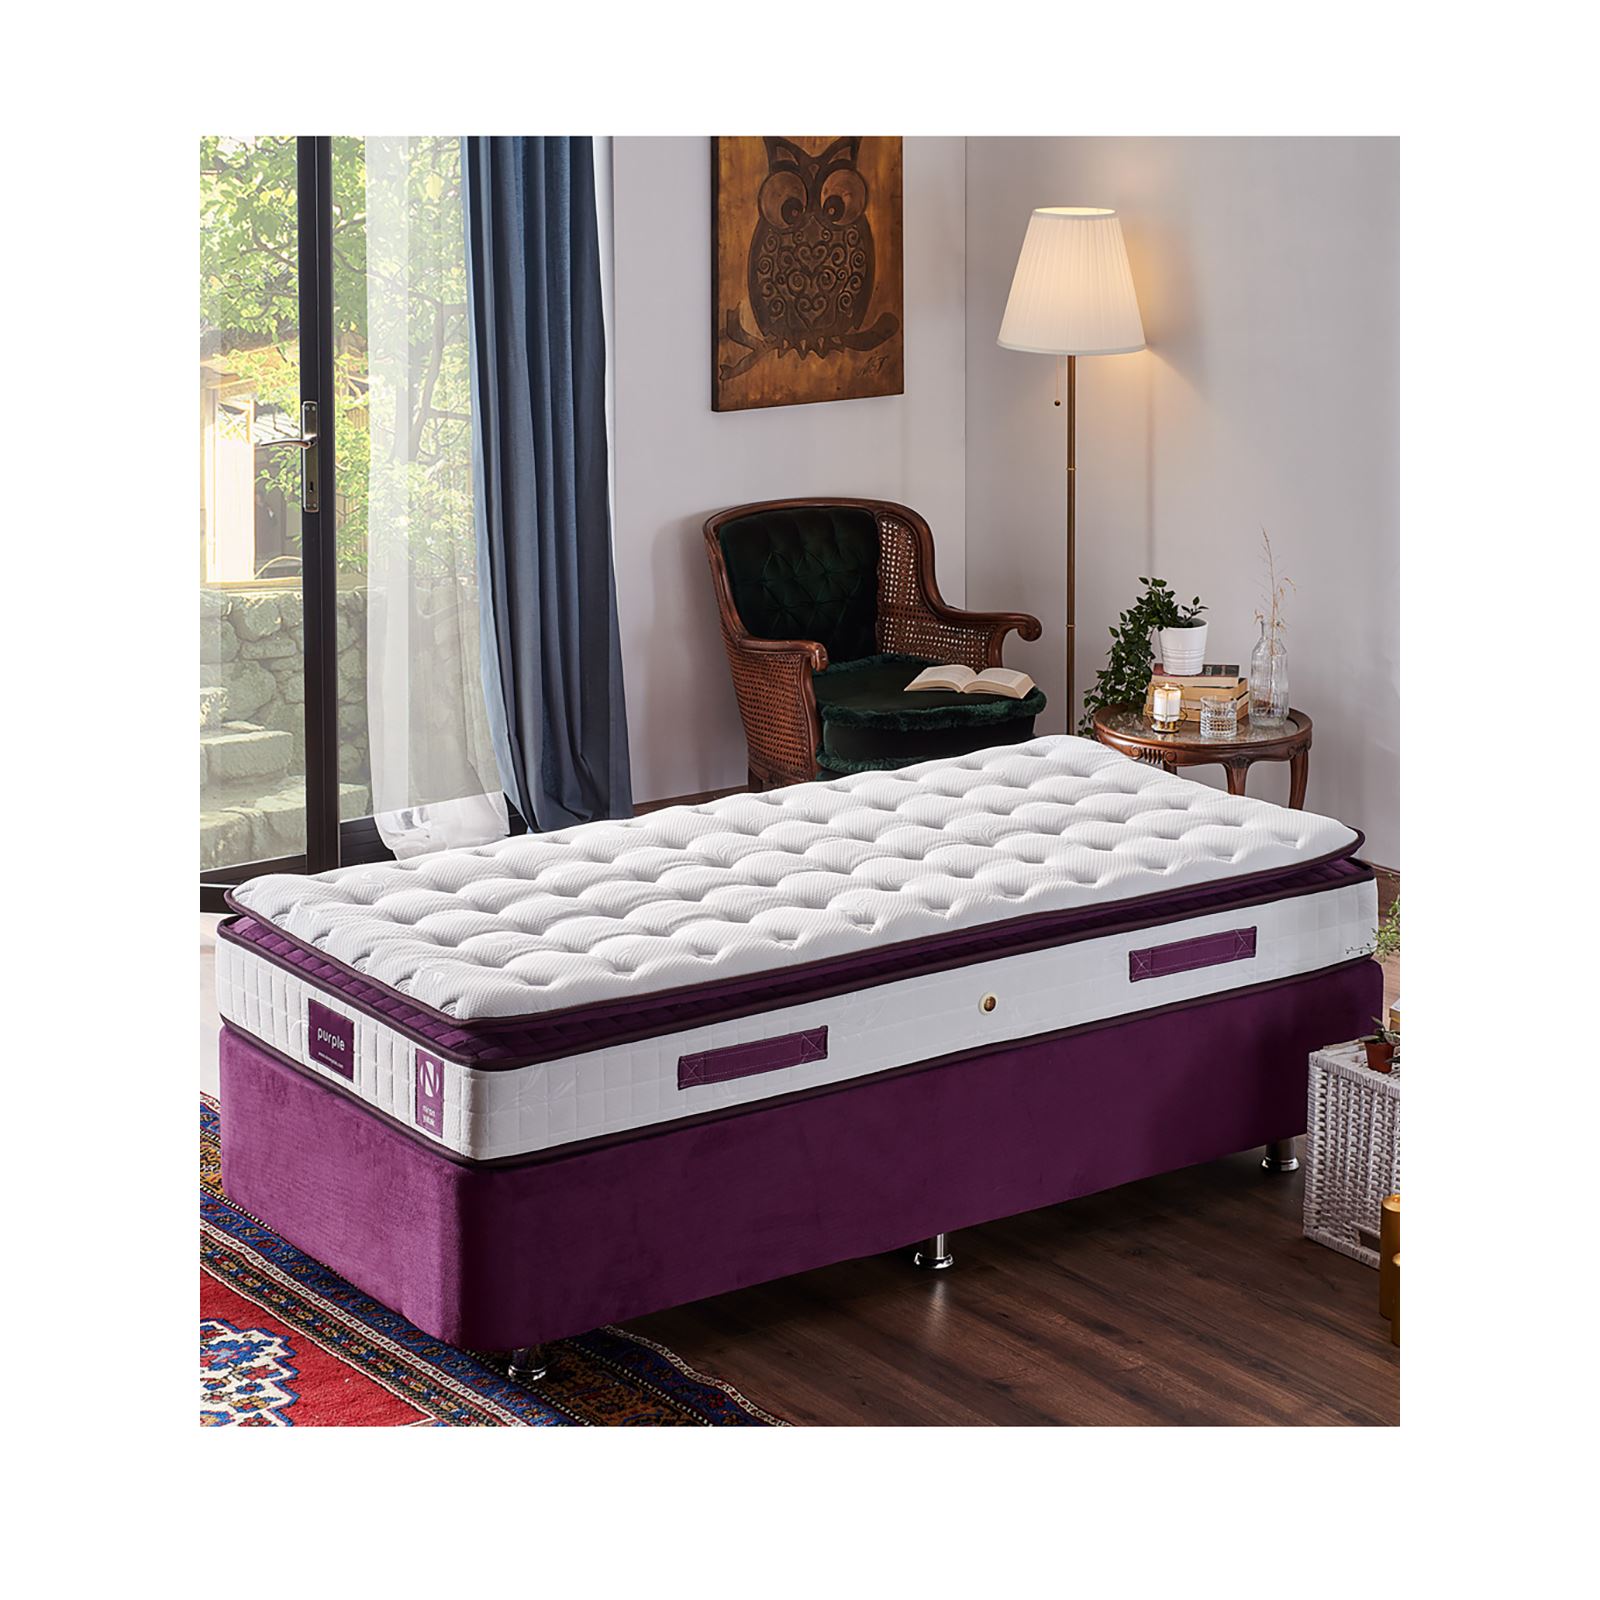 Niron Purple Yatak Seti 90x200 cm Tek Kişilik Yatak Baza Başlık Takımı Orta Sert Yatak Baza ve Başlığı Mor